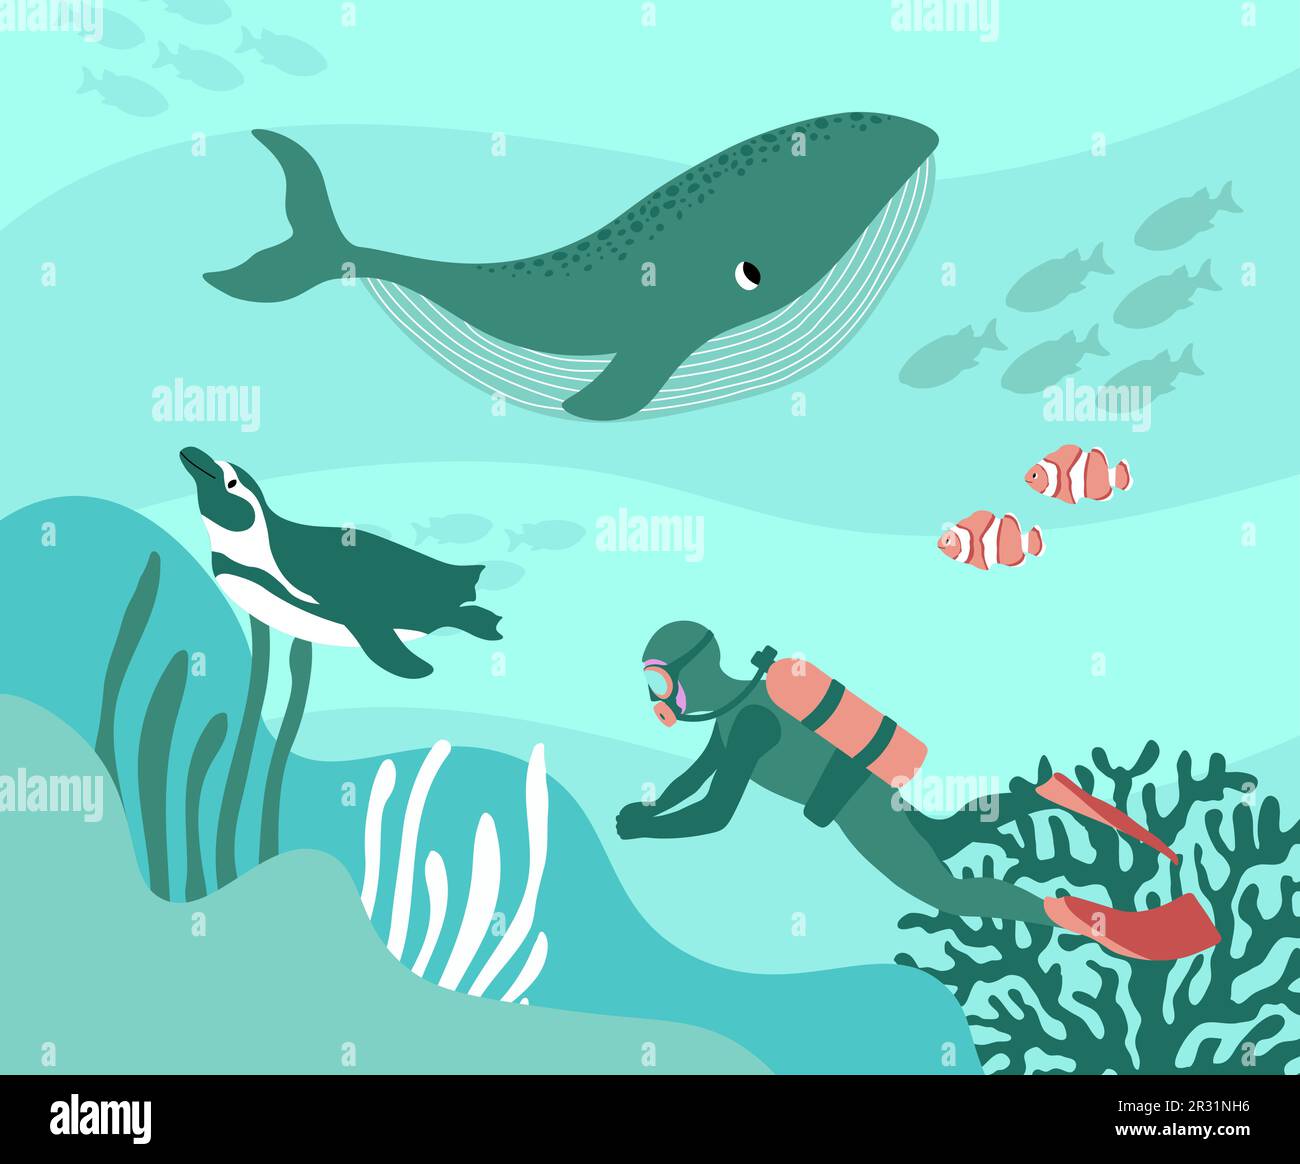 Vektor Ozean Illustration mit Taucher, Pinguin, Clownfisch, Algen, Korallen. Unterwasser Meerestiere. Tauchen. Ökologisches Design für Banner, Flyer, Postkarten Stock Vektor